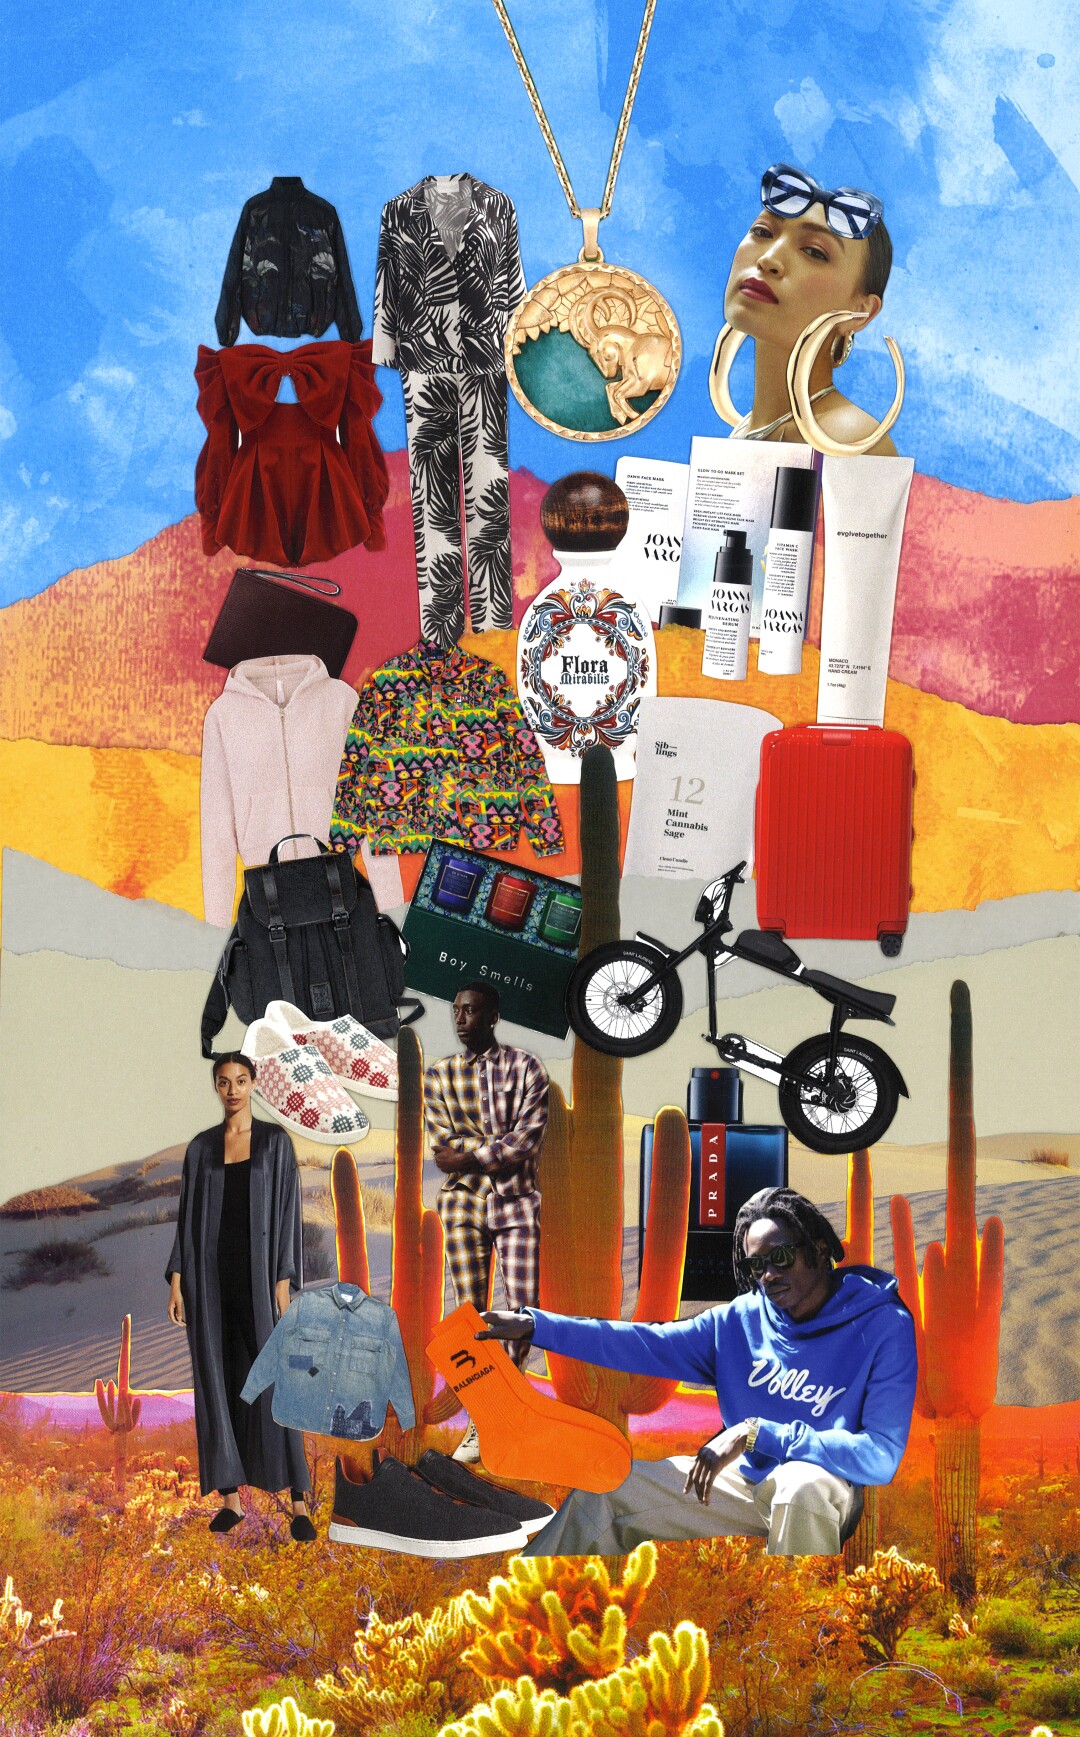 Un collage d'un paysage désertique avec un vélo, des chaussures, des vêtements et des personnes.